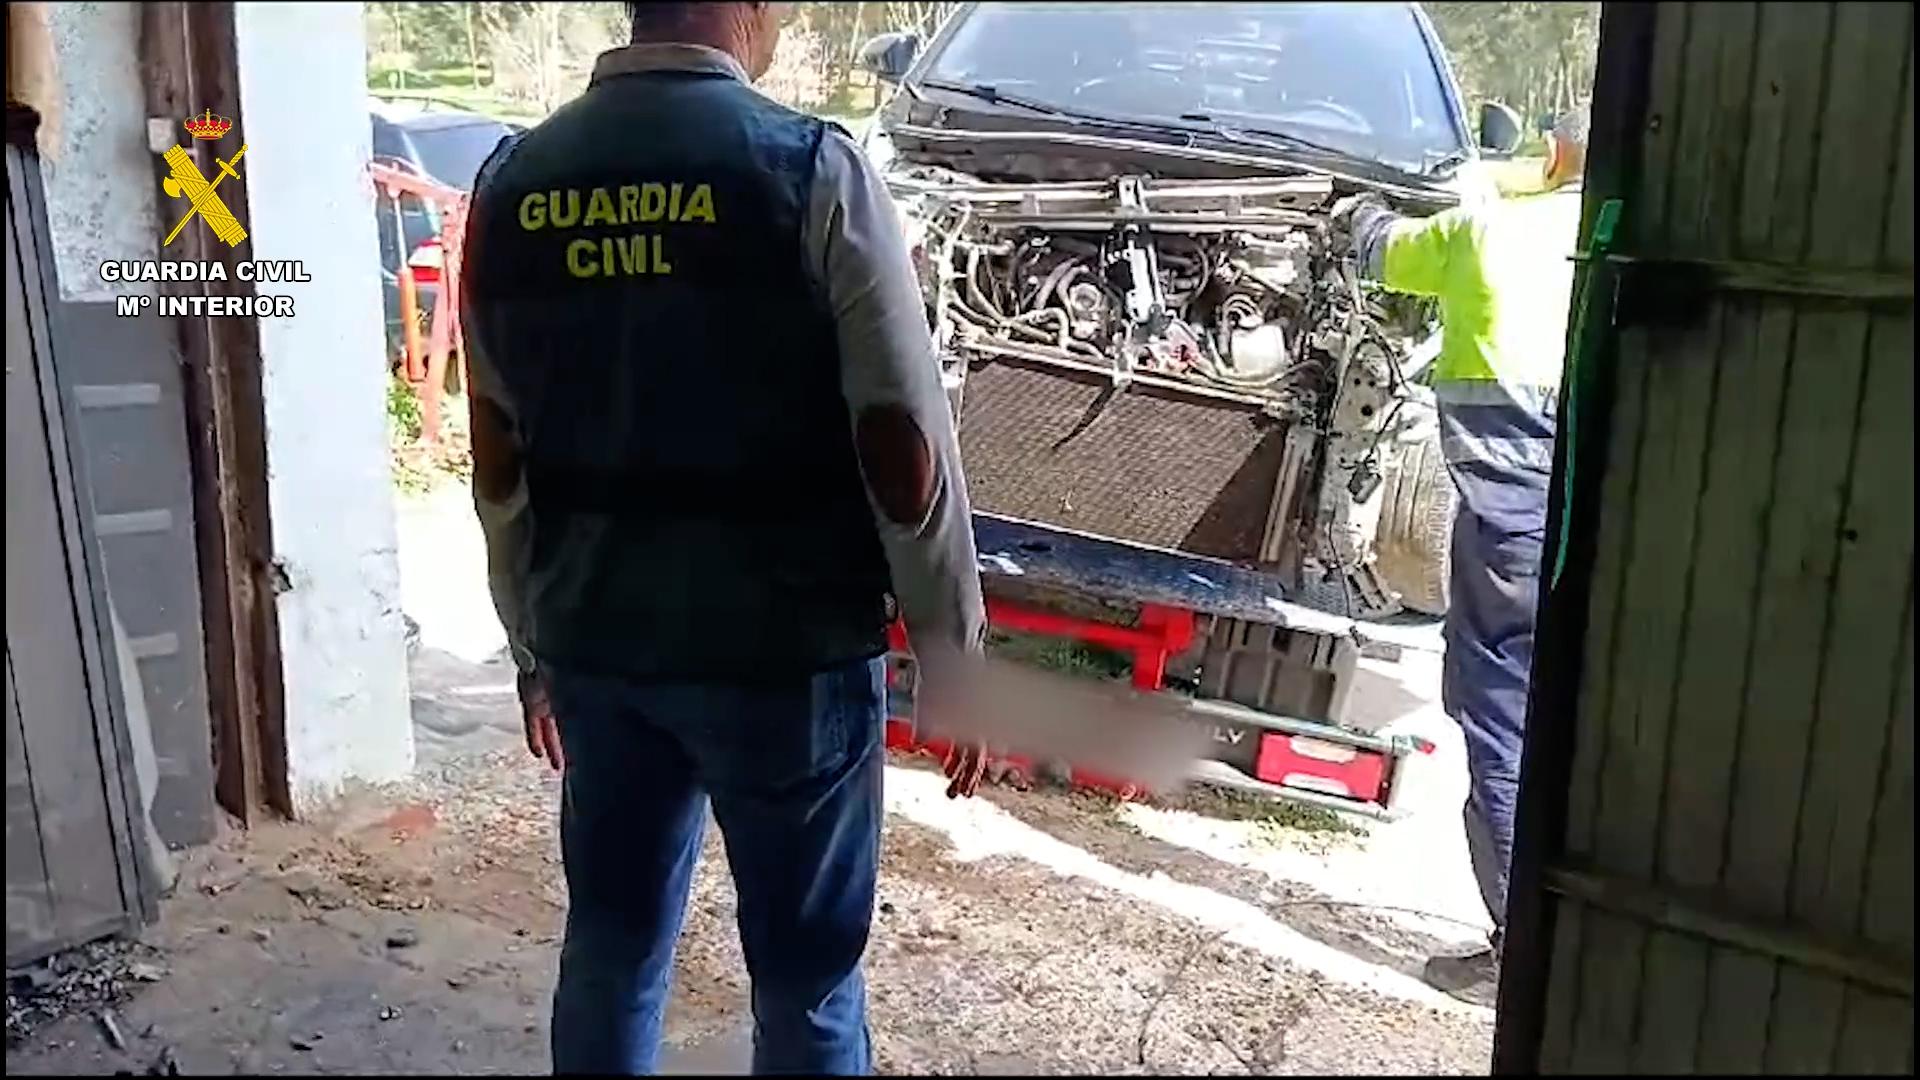 Imagen de un agente frente a un vehículo en proceso de despiece